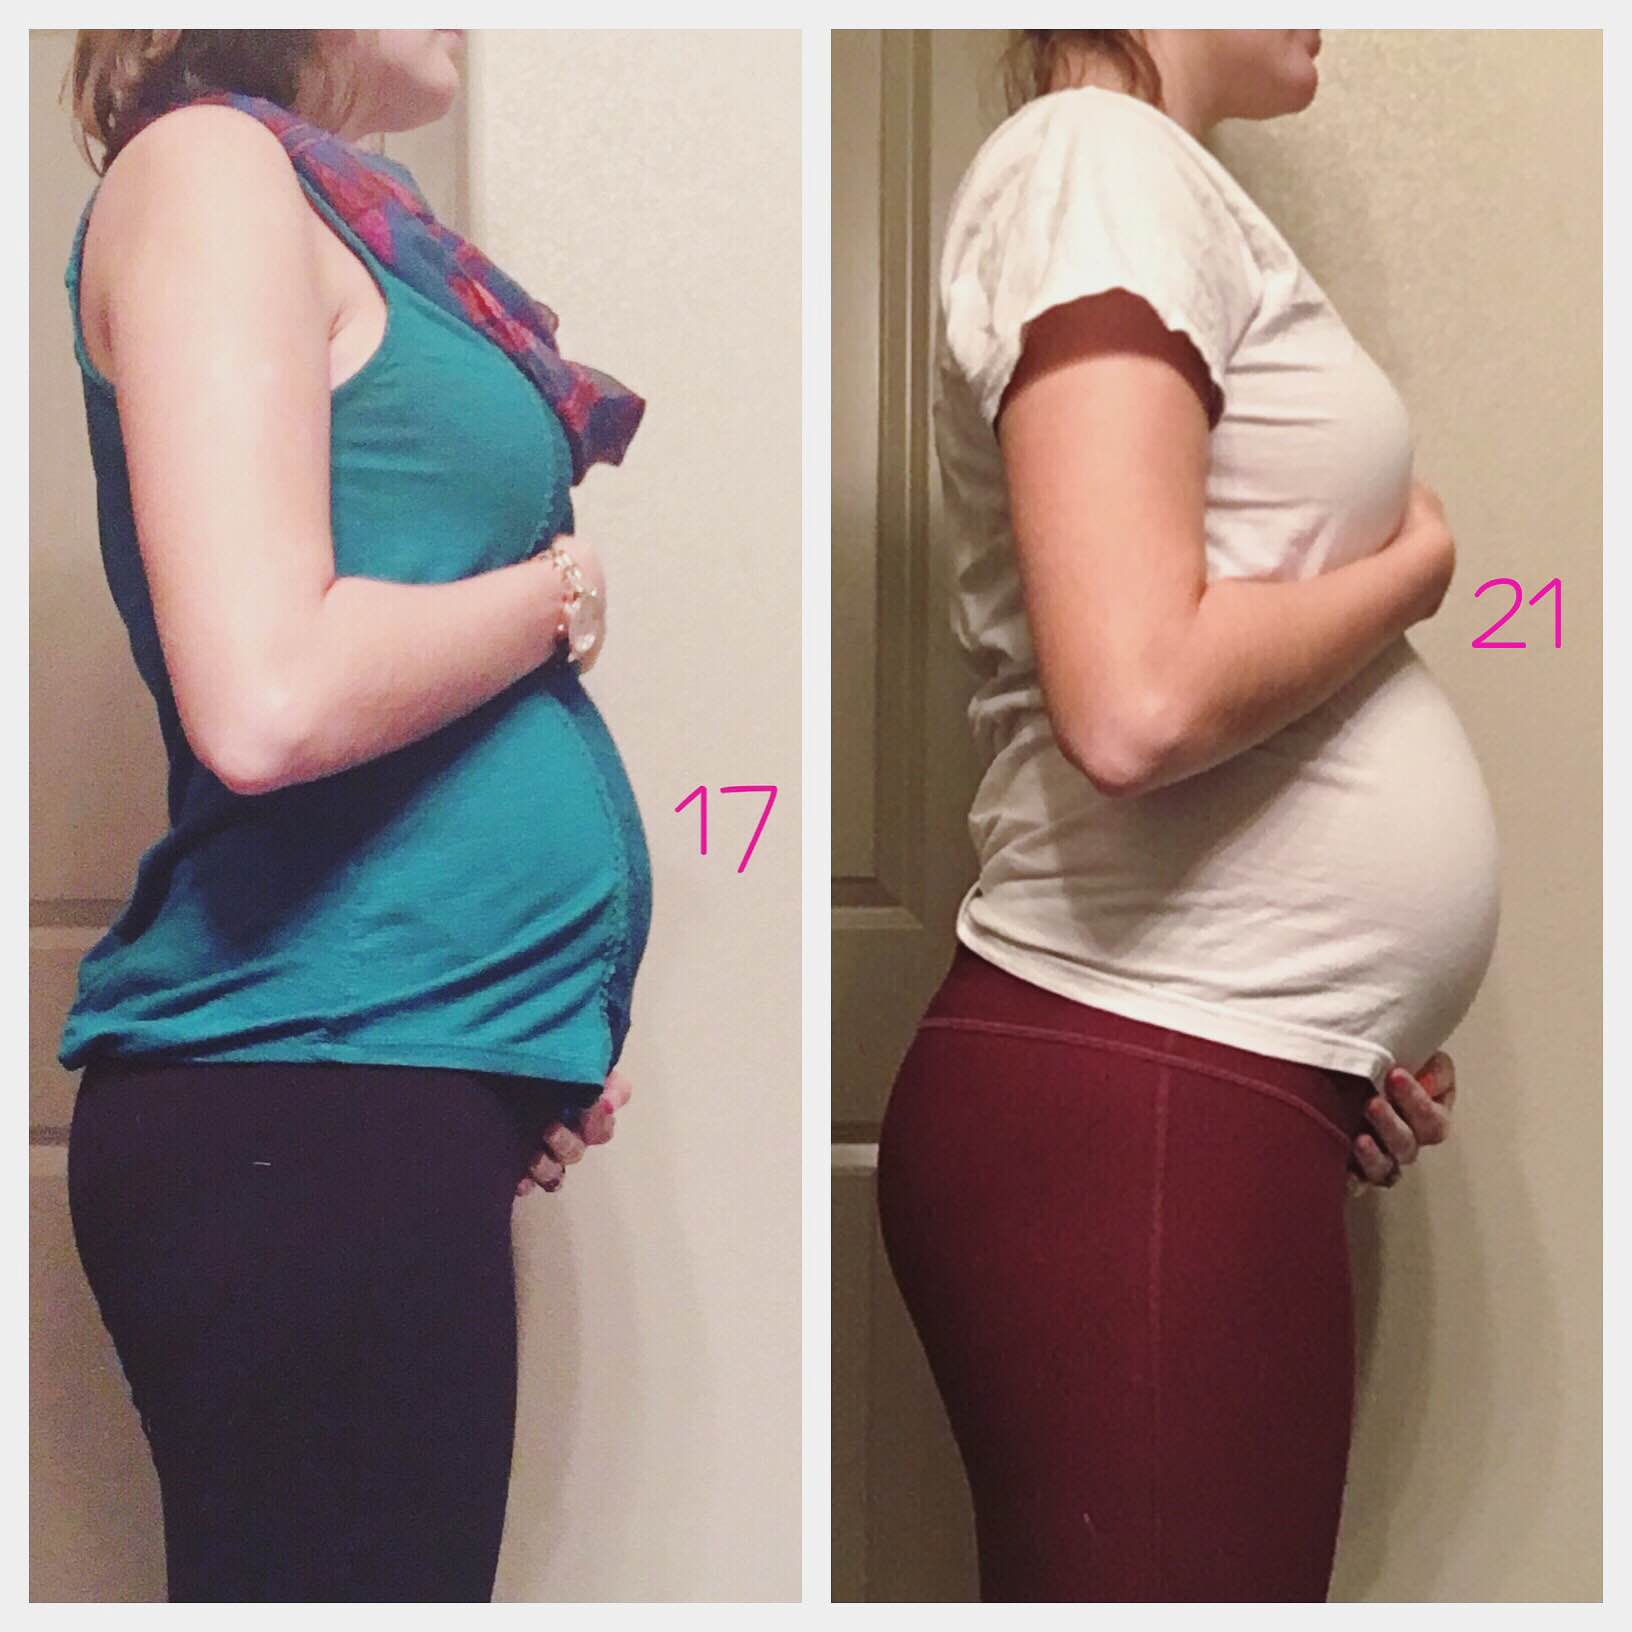 17-21 weeks of pregnancy